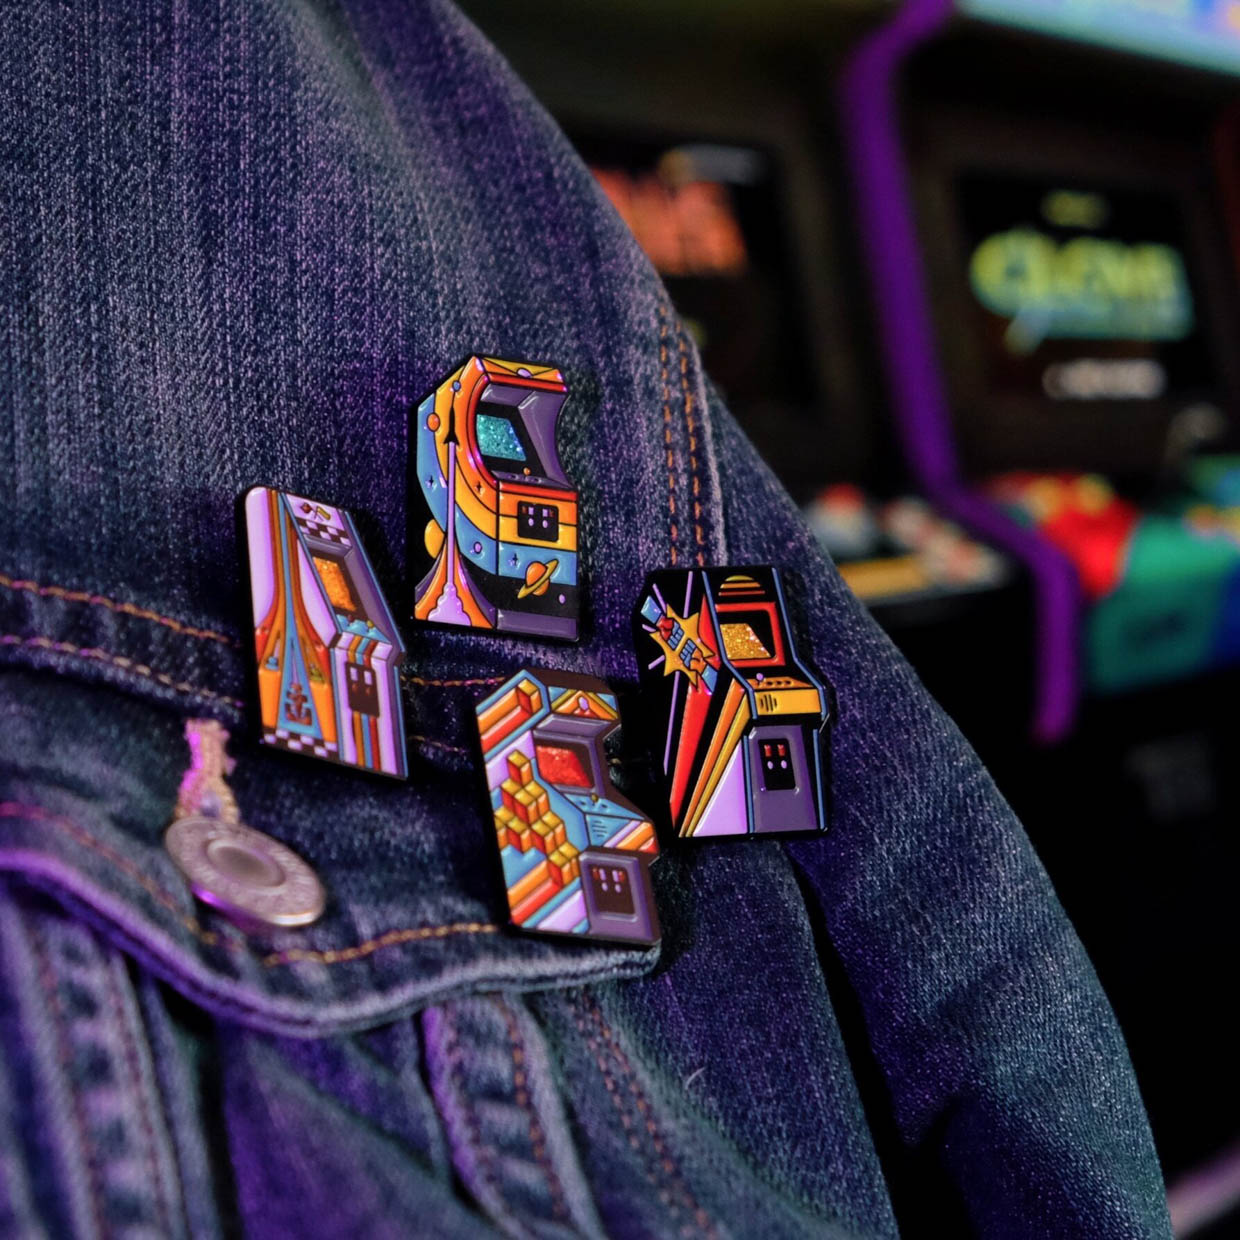 DKNG Arcade Pins